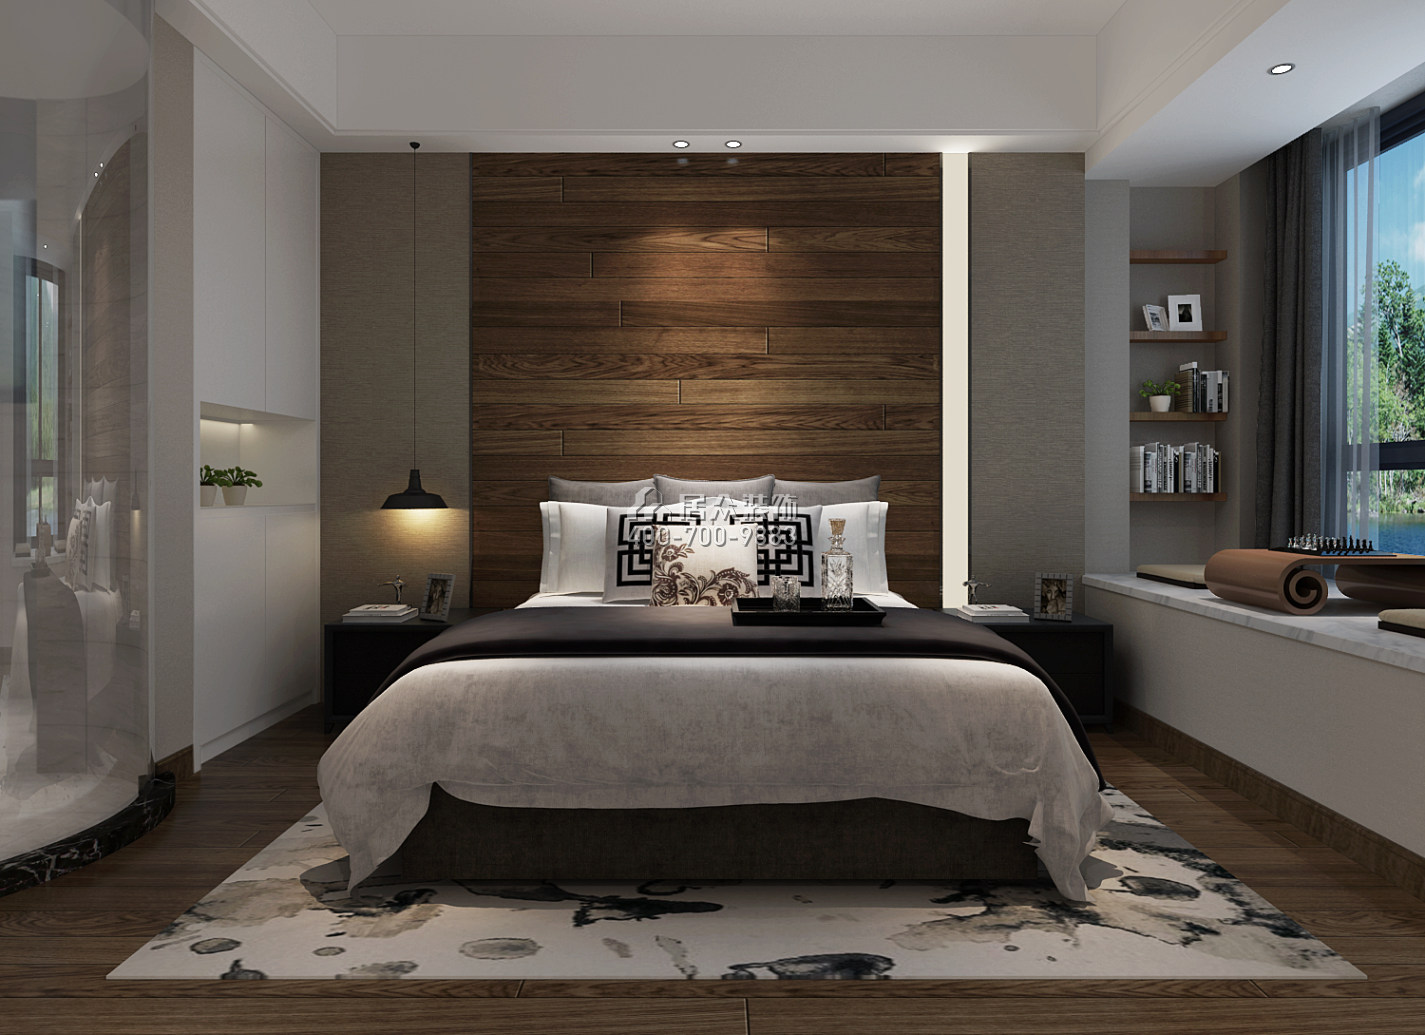 天利天鹅湾132平方米现代简约风格平层户型卧室装修效果图